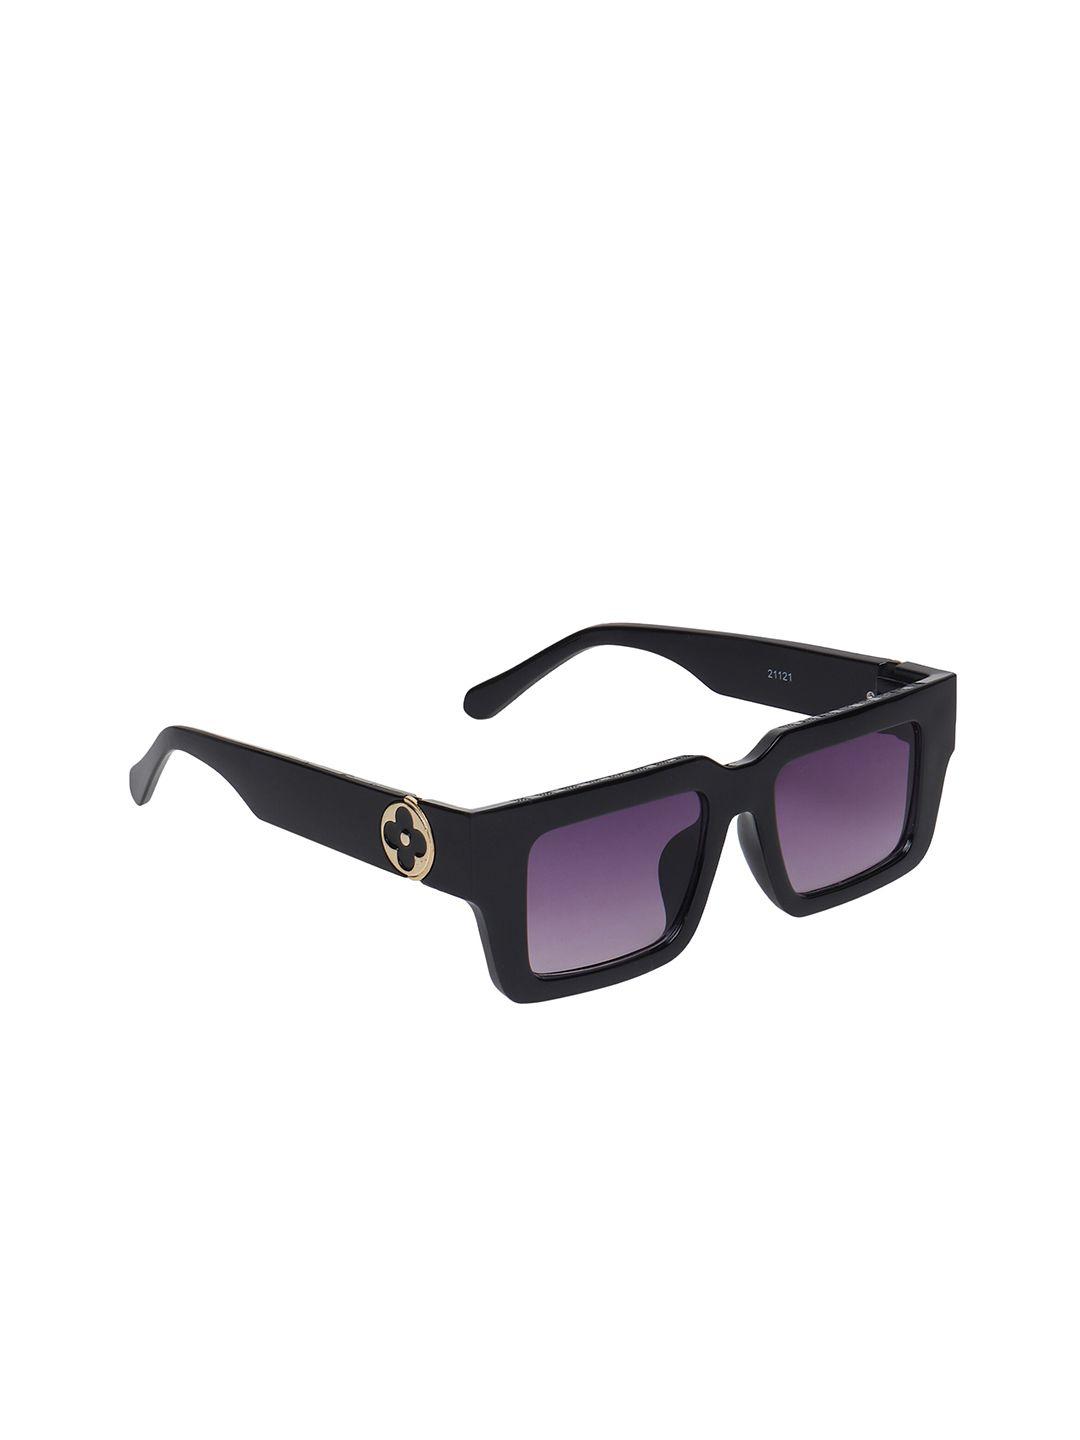 swiss design rectangle sunglasses full rim with uv protected lens sdsg-21121-06